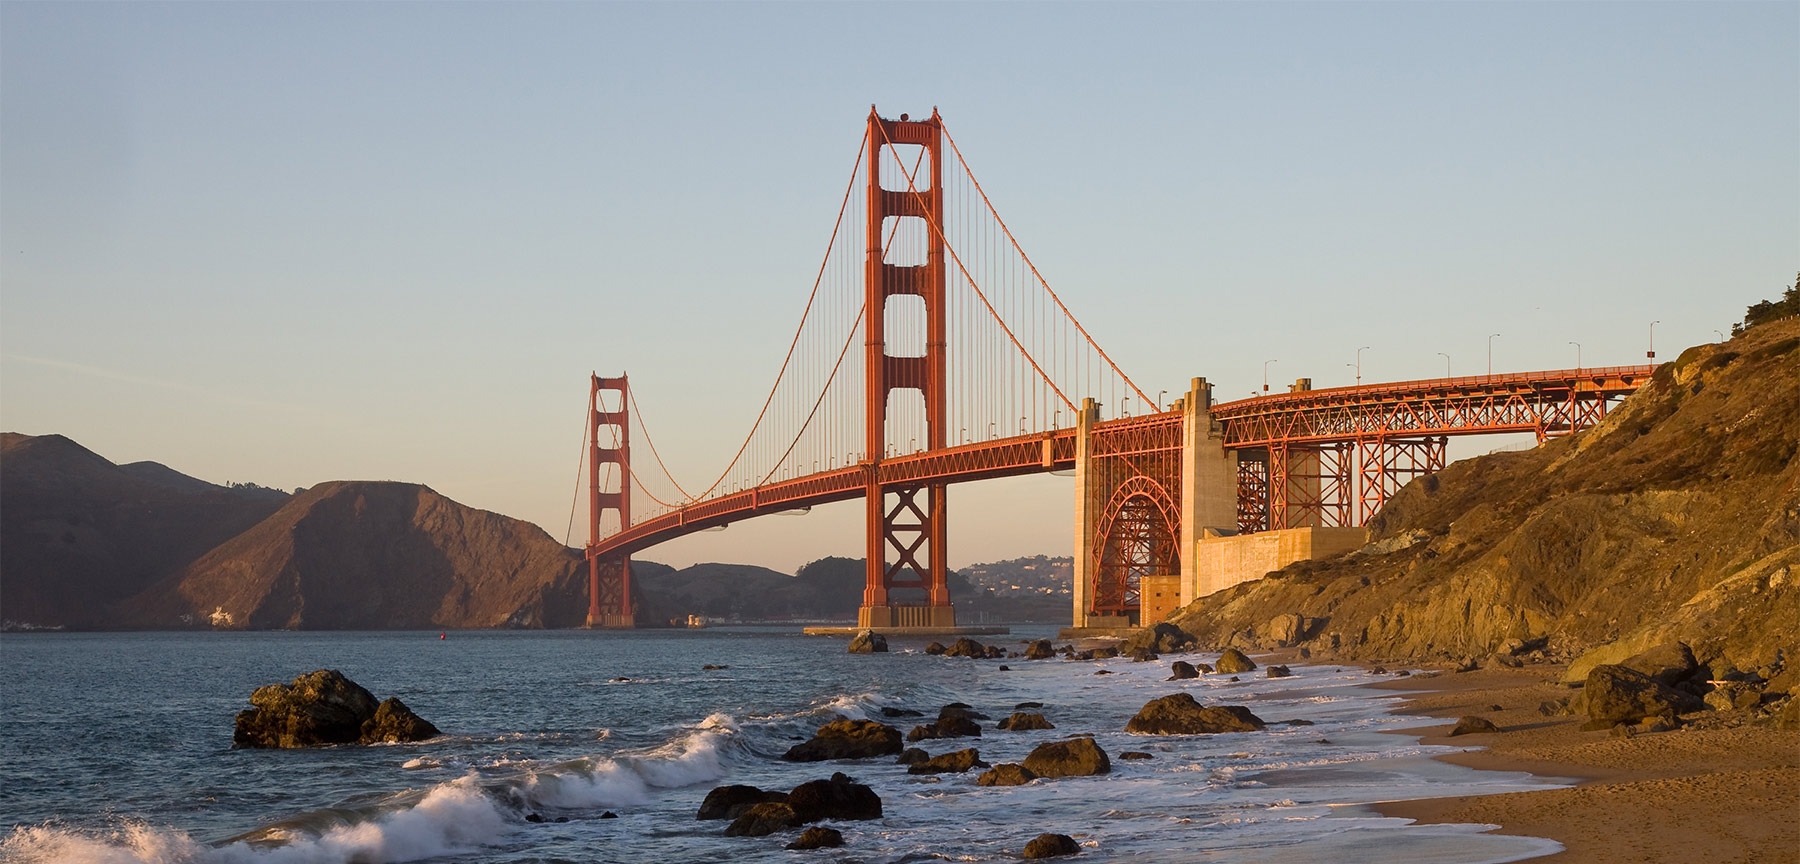 Photo credit: Golden Gate Bridge, by Christian Mehlführer